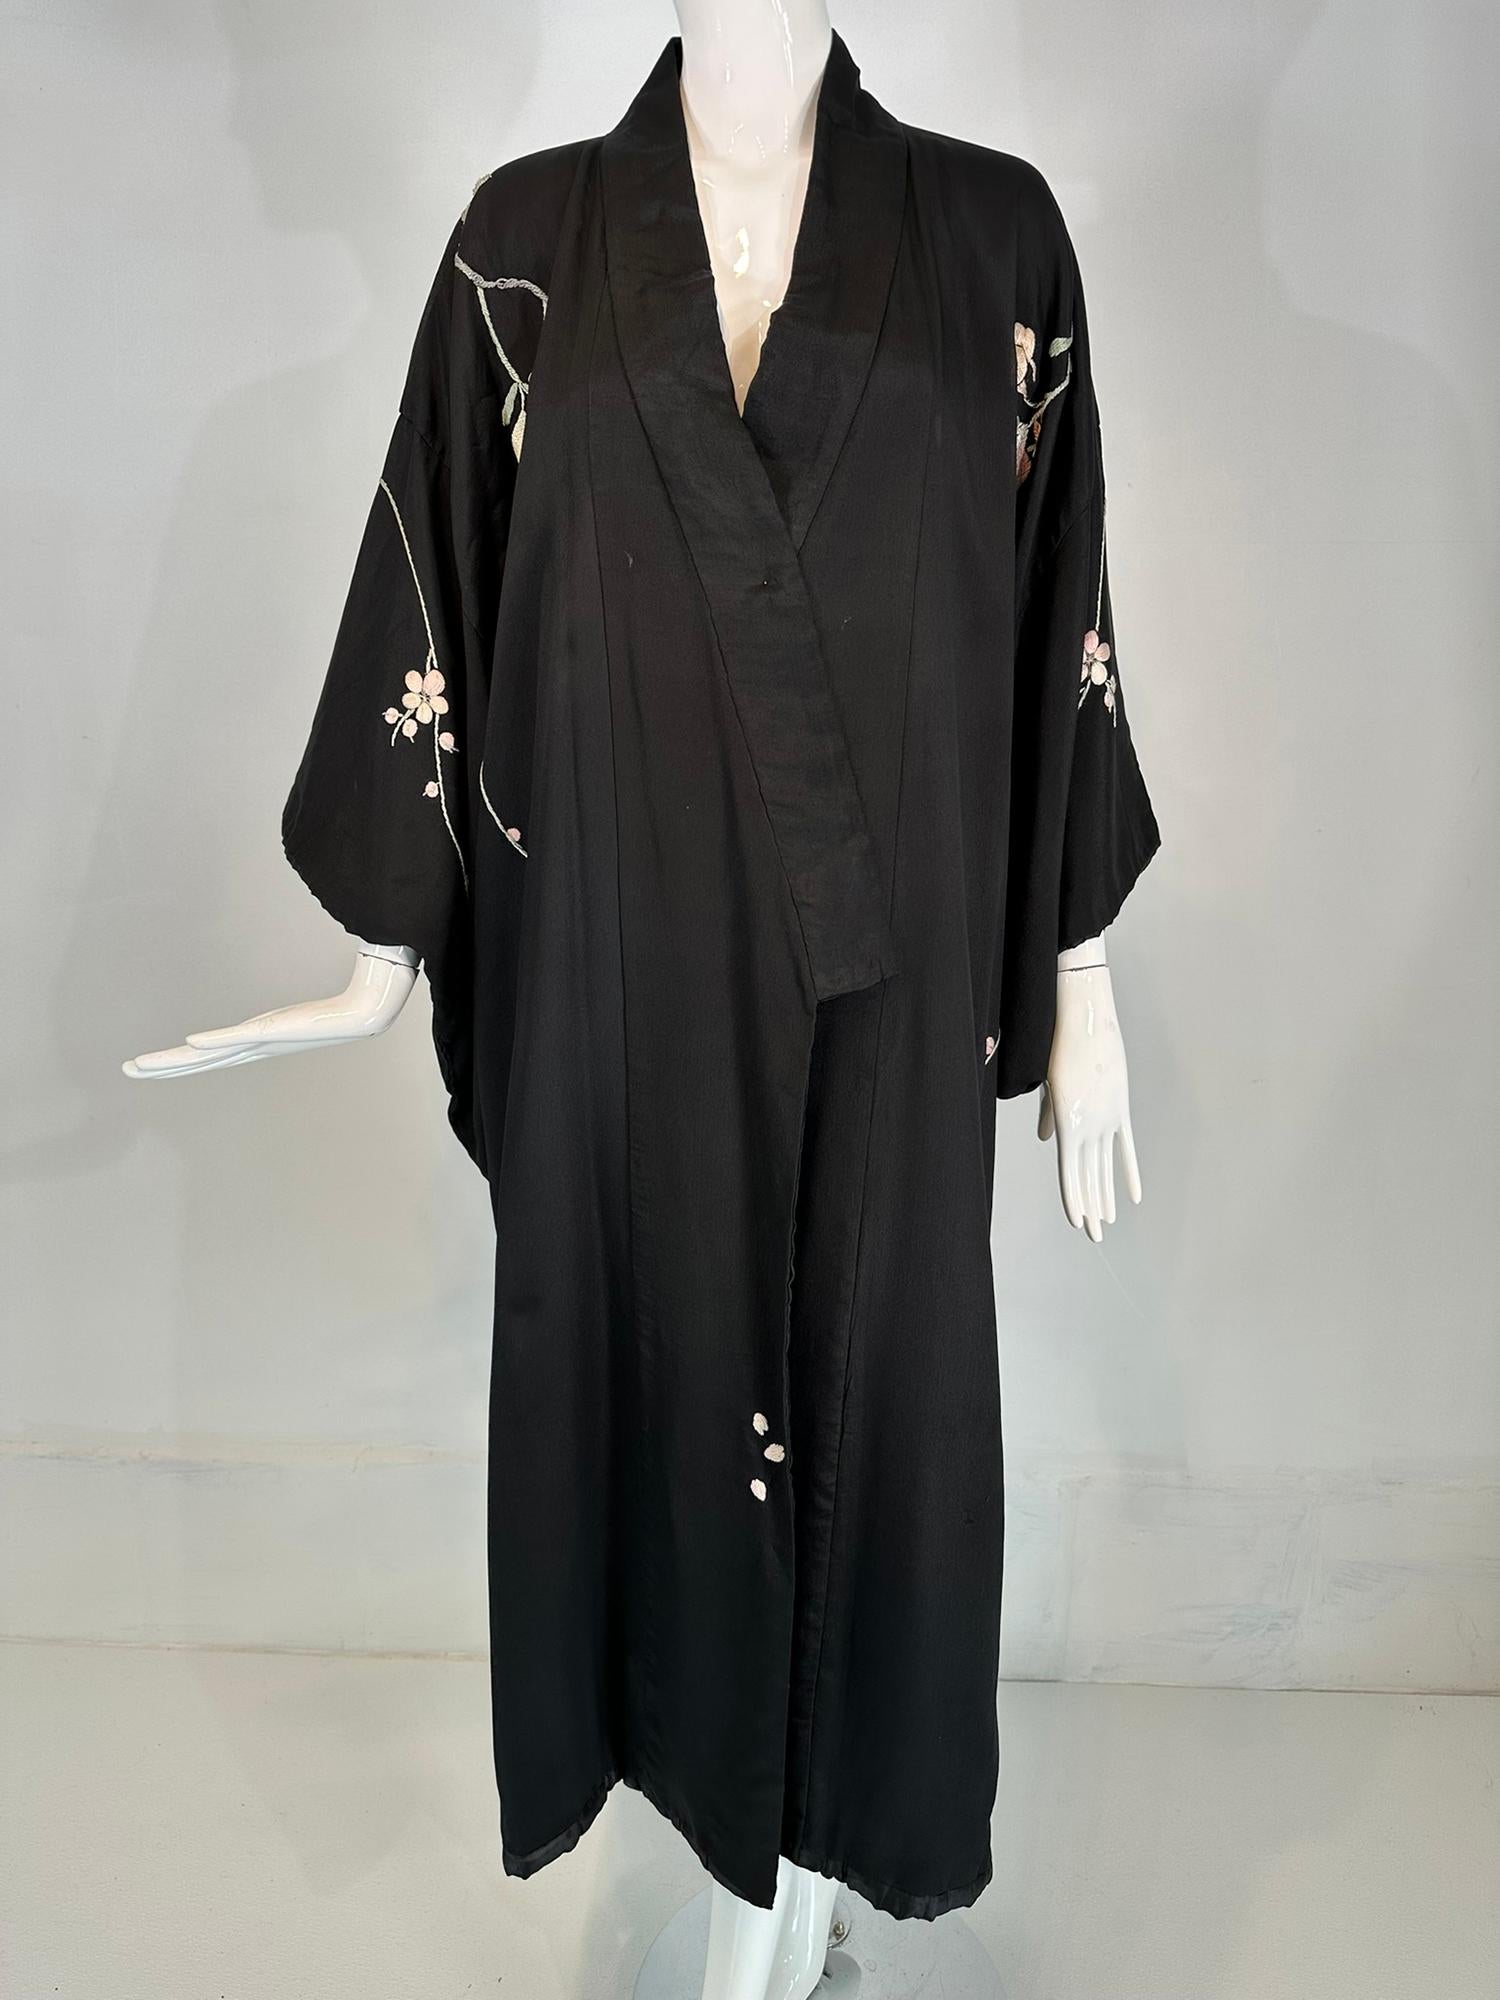 Robe kimono vintage en rayonne noire brodée de fleurs pastel des années 1930-40. Peignoir enveloppant doublé de tissu de rayonne noir, avec des manches de style kimono aux ourlets roulés et paddés. La robe est longue. Broderie florale sur le devant